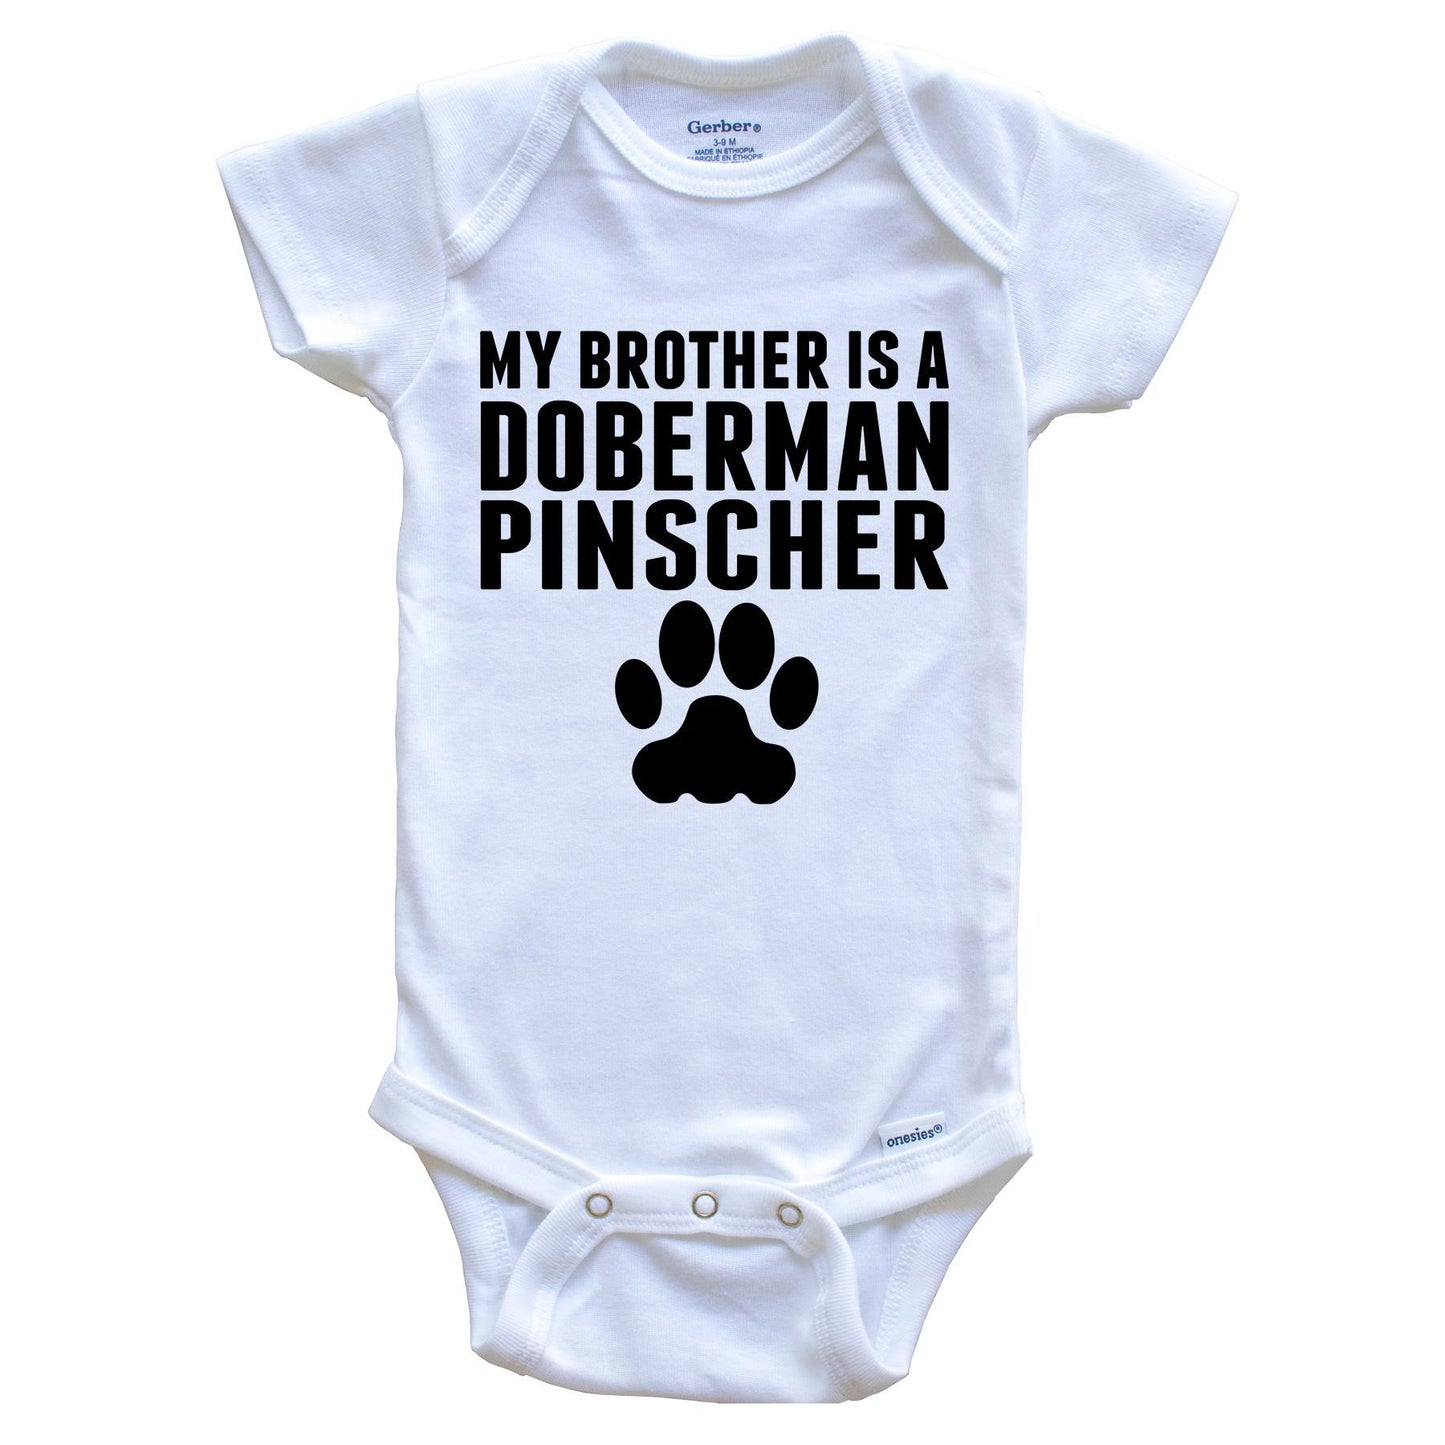 My Brother Is A Doberman Pinscher Baby Onesie